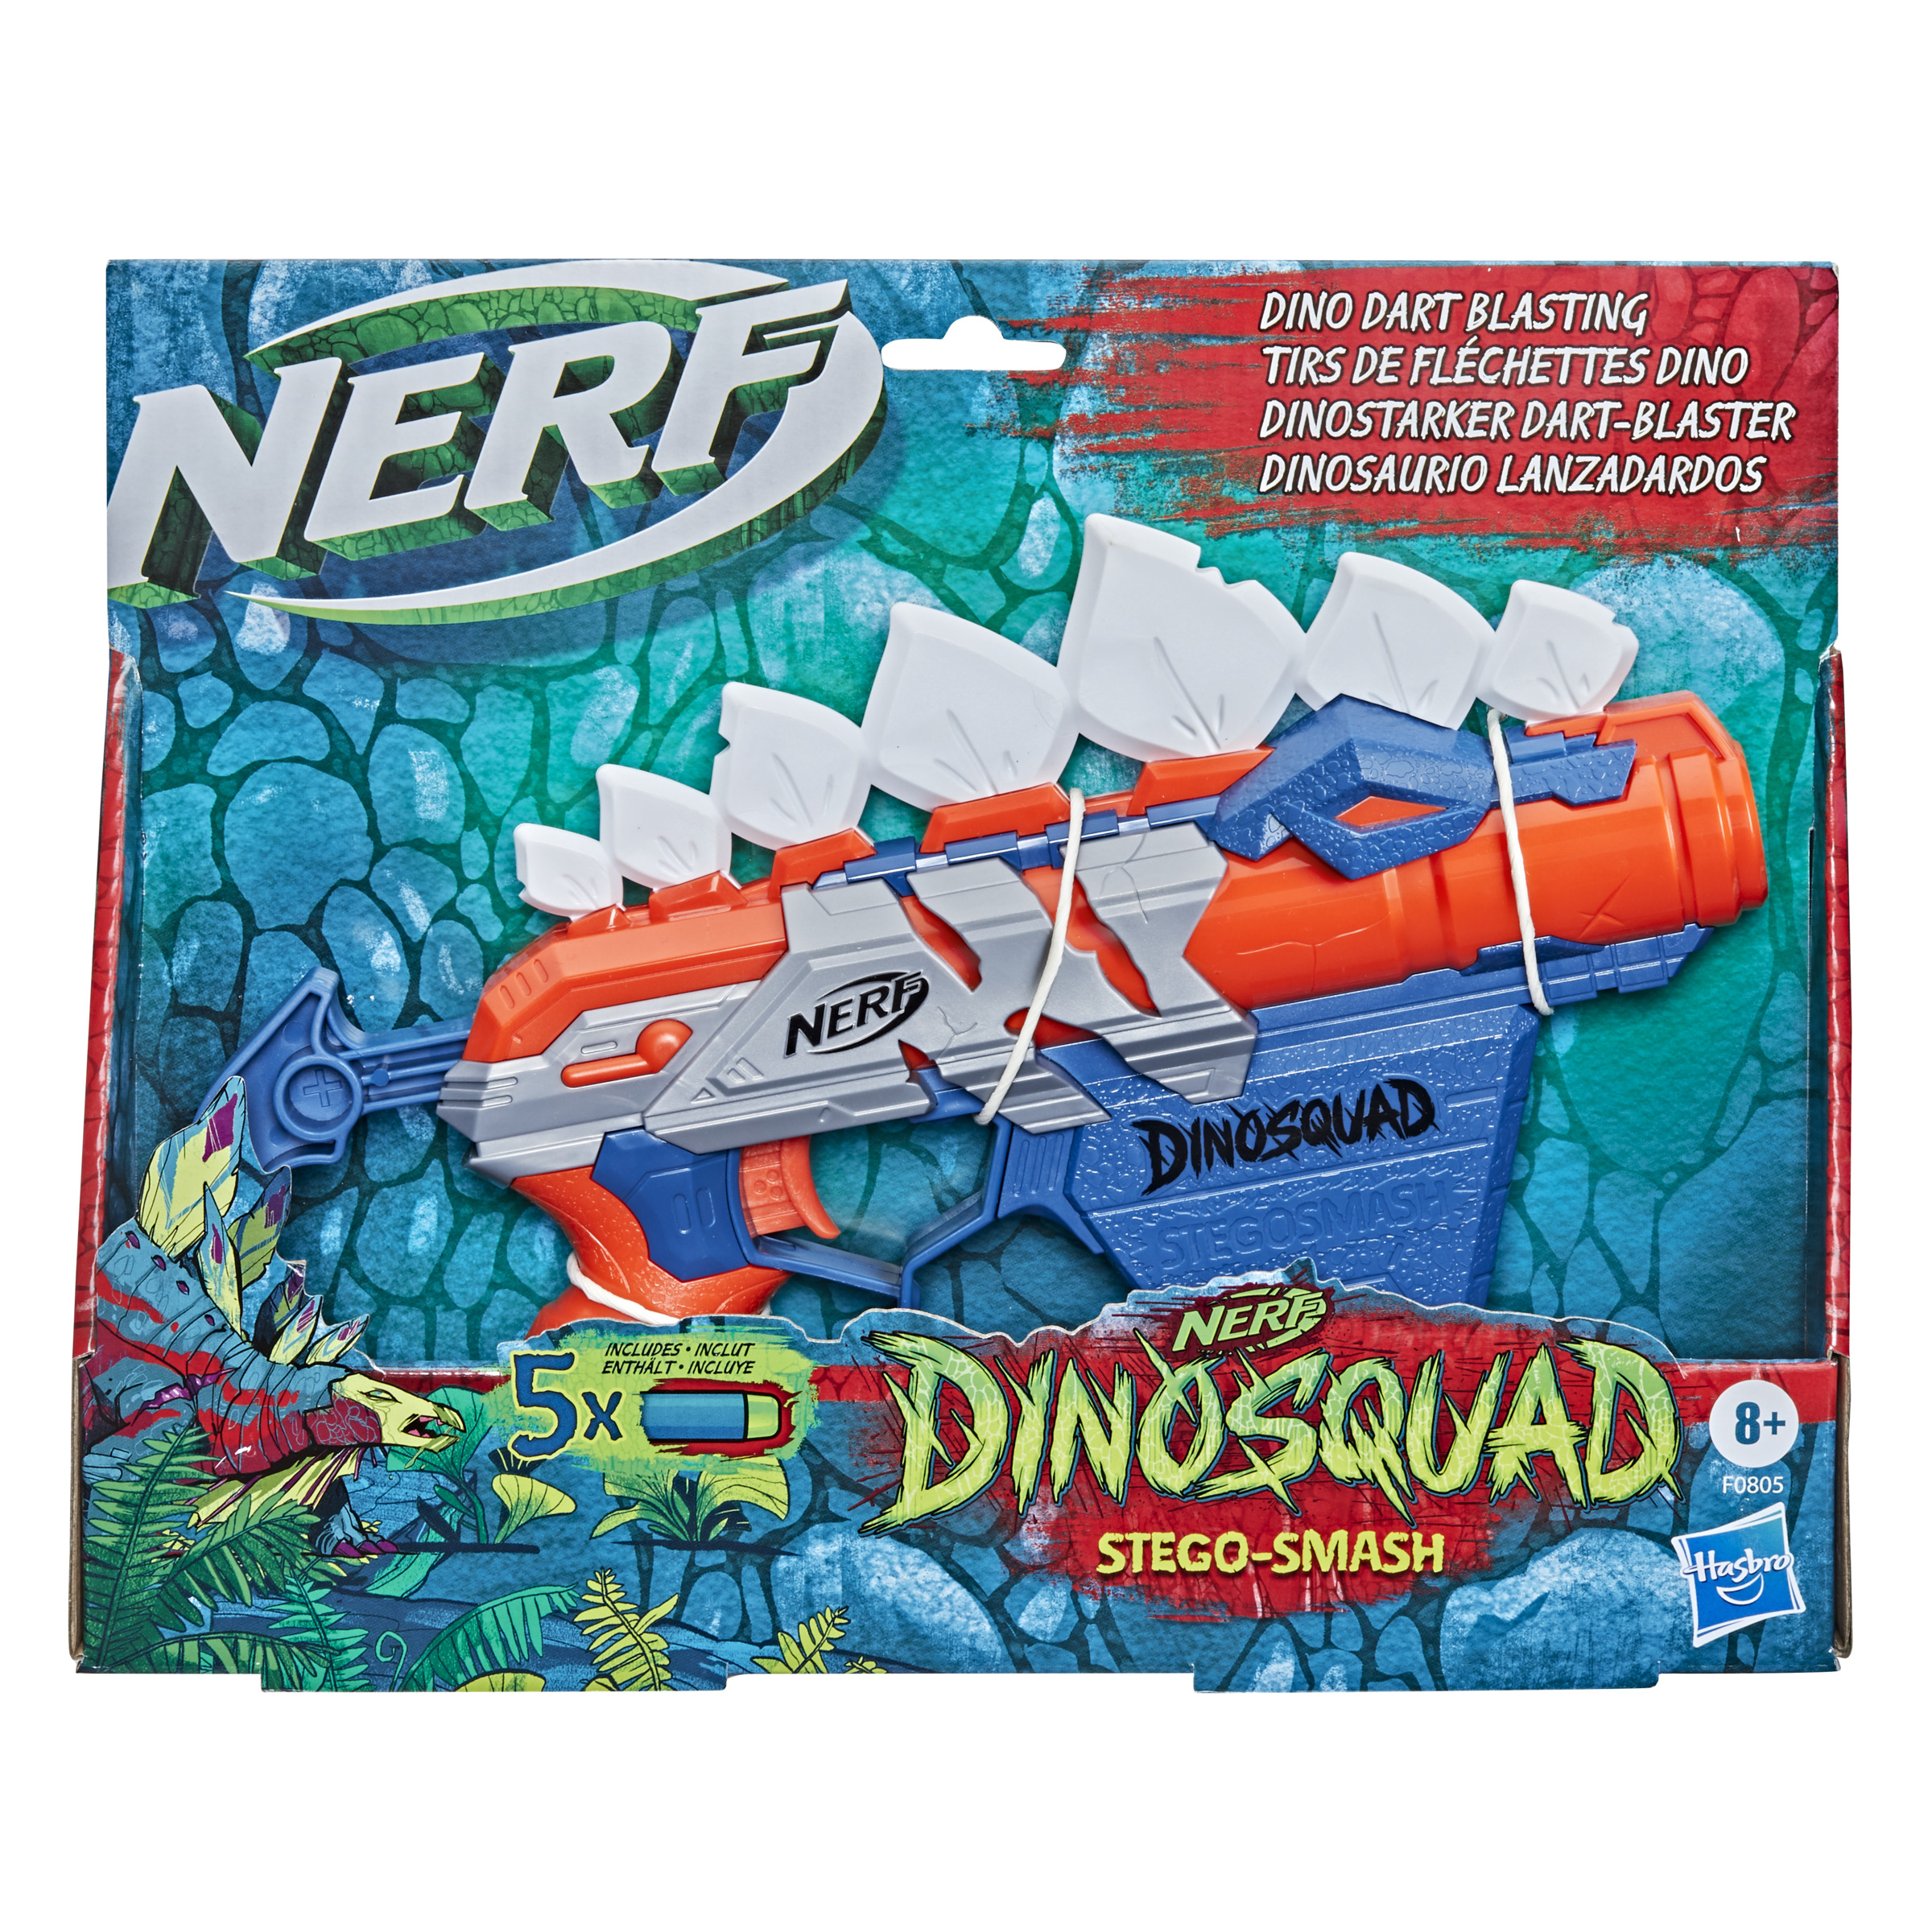 Nerf Stegosmash - Nerf Dinosquad Stegosmash - Nerf  MKP